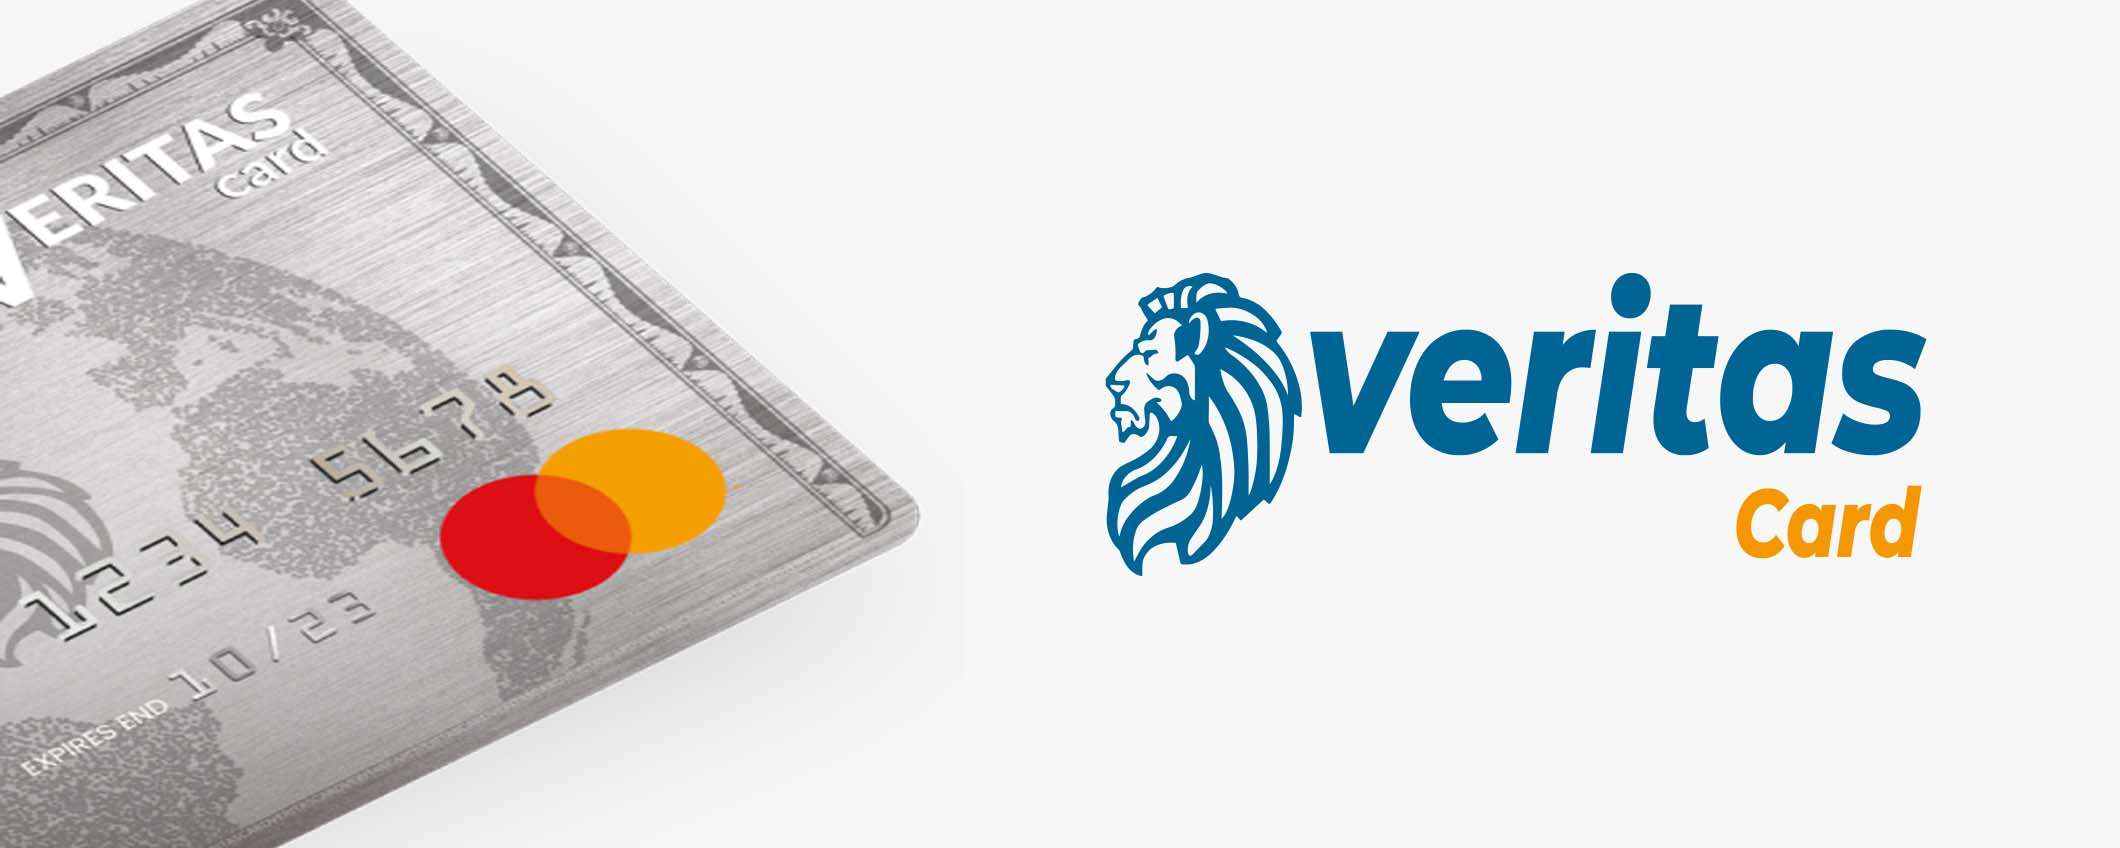 Carta Veritas: la prepagata MasterCard per acquistare in libertà